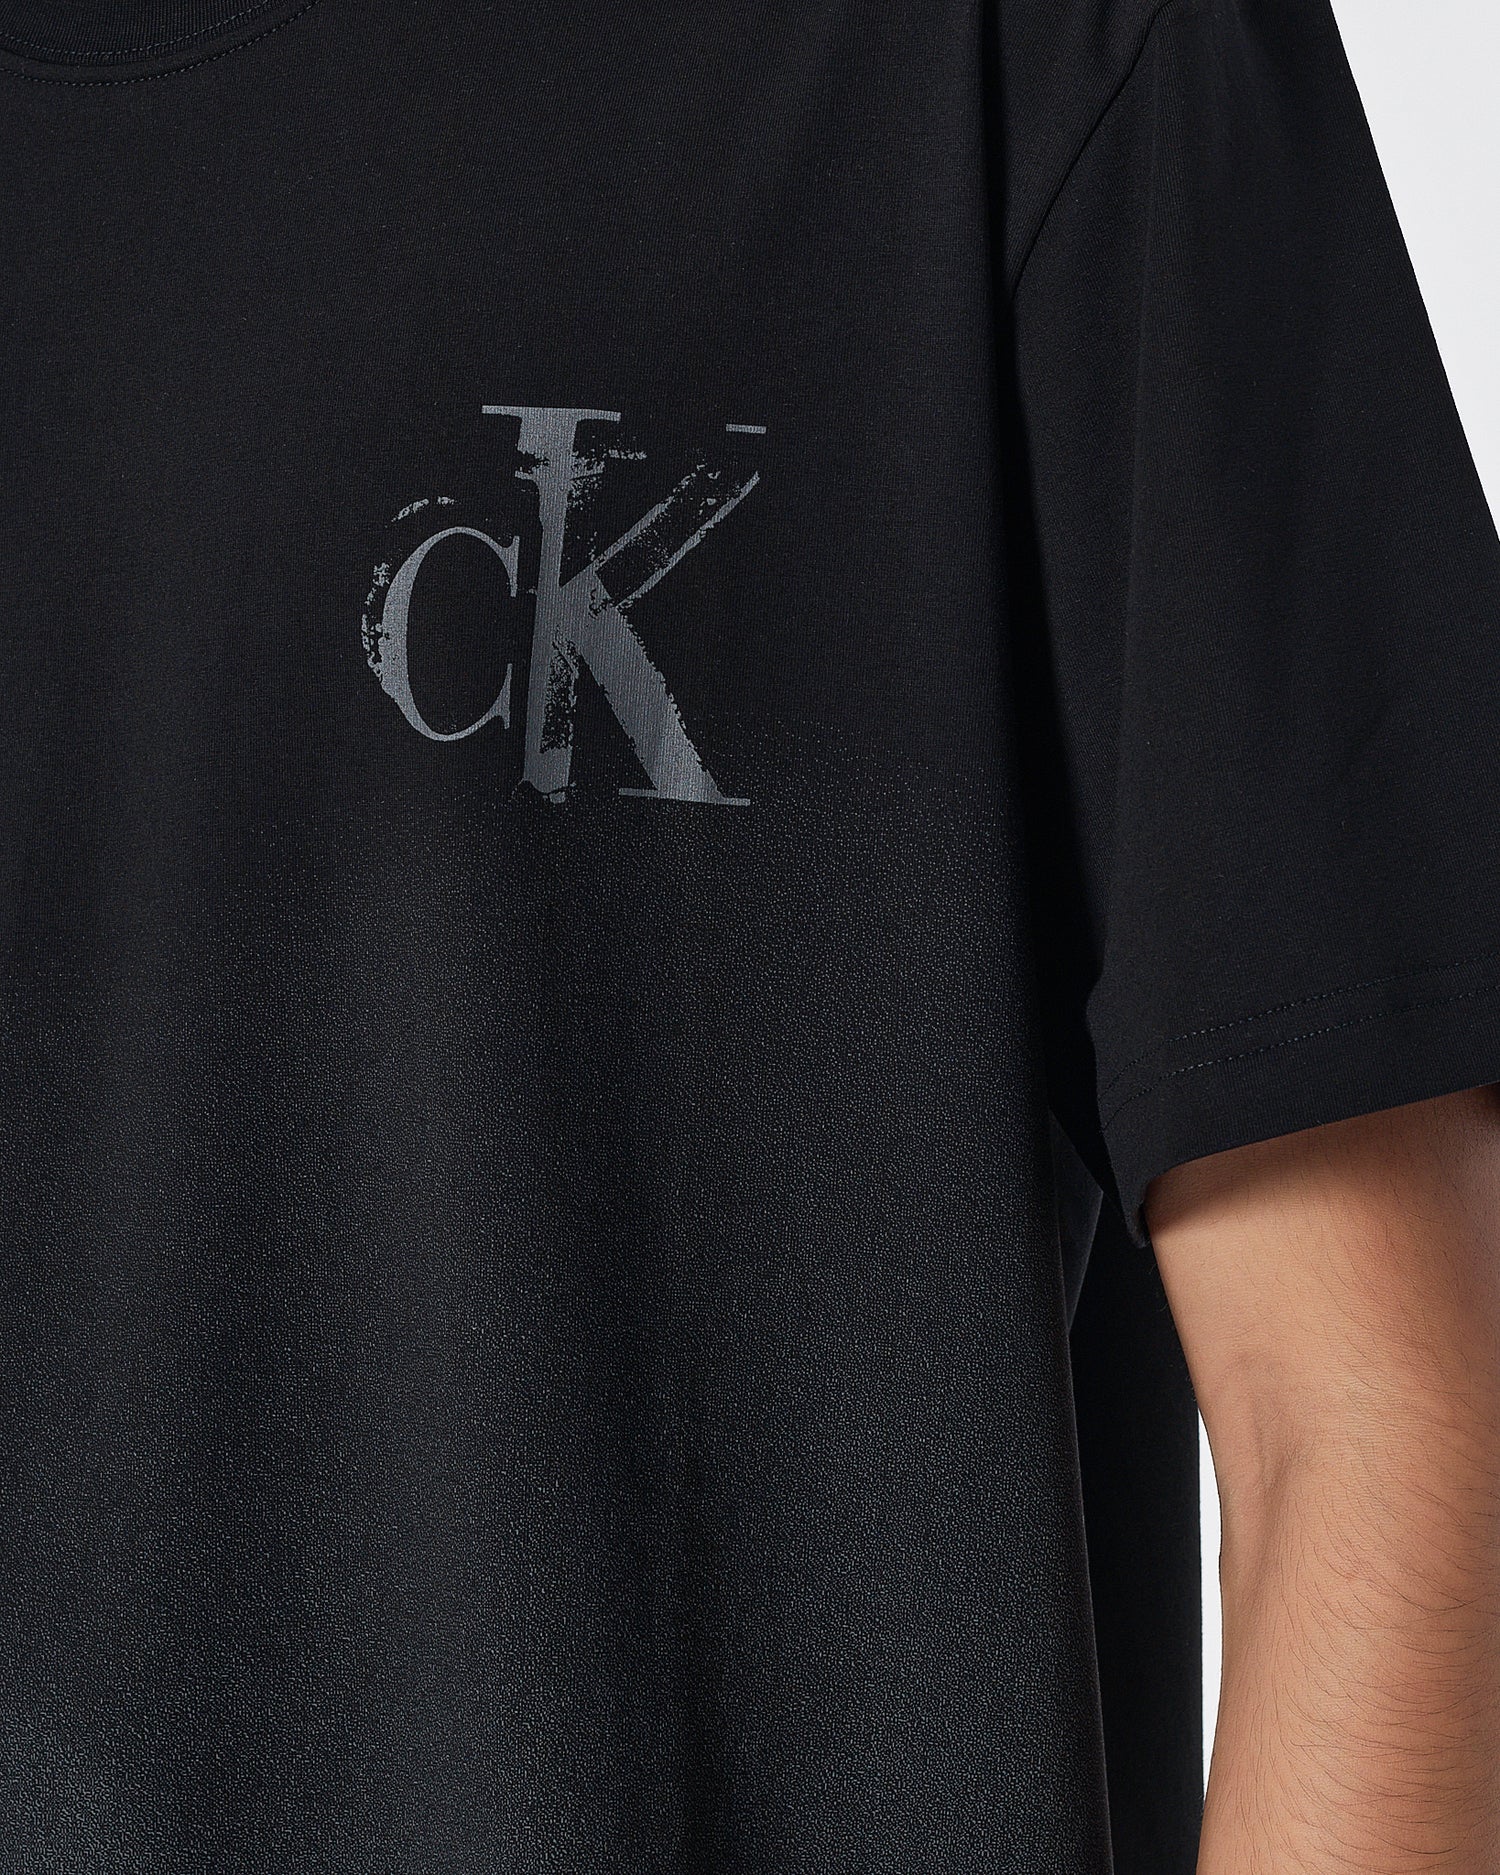 CK Gradient Color Men Black T-Shirt 14.90